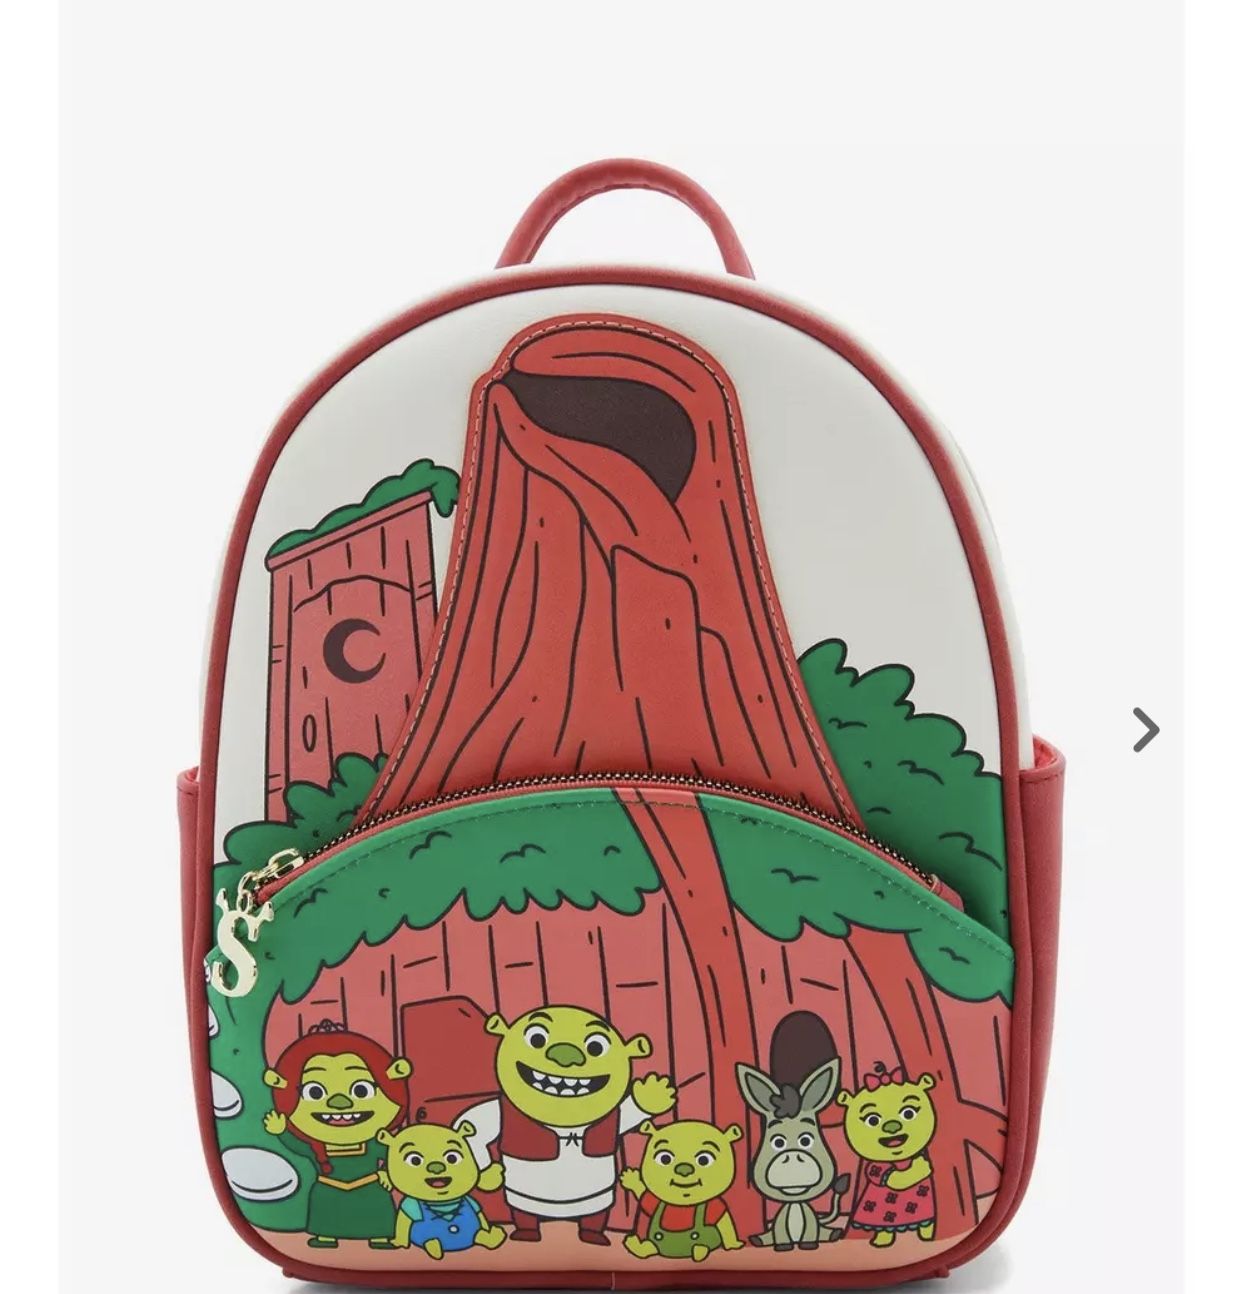 Shrek Mini Backpack